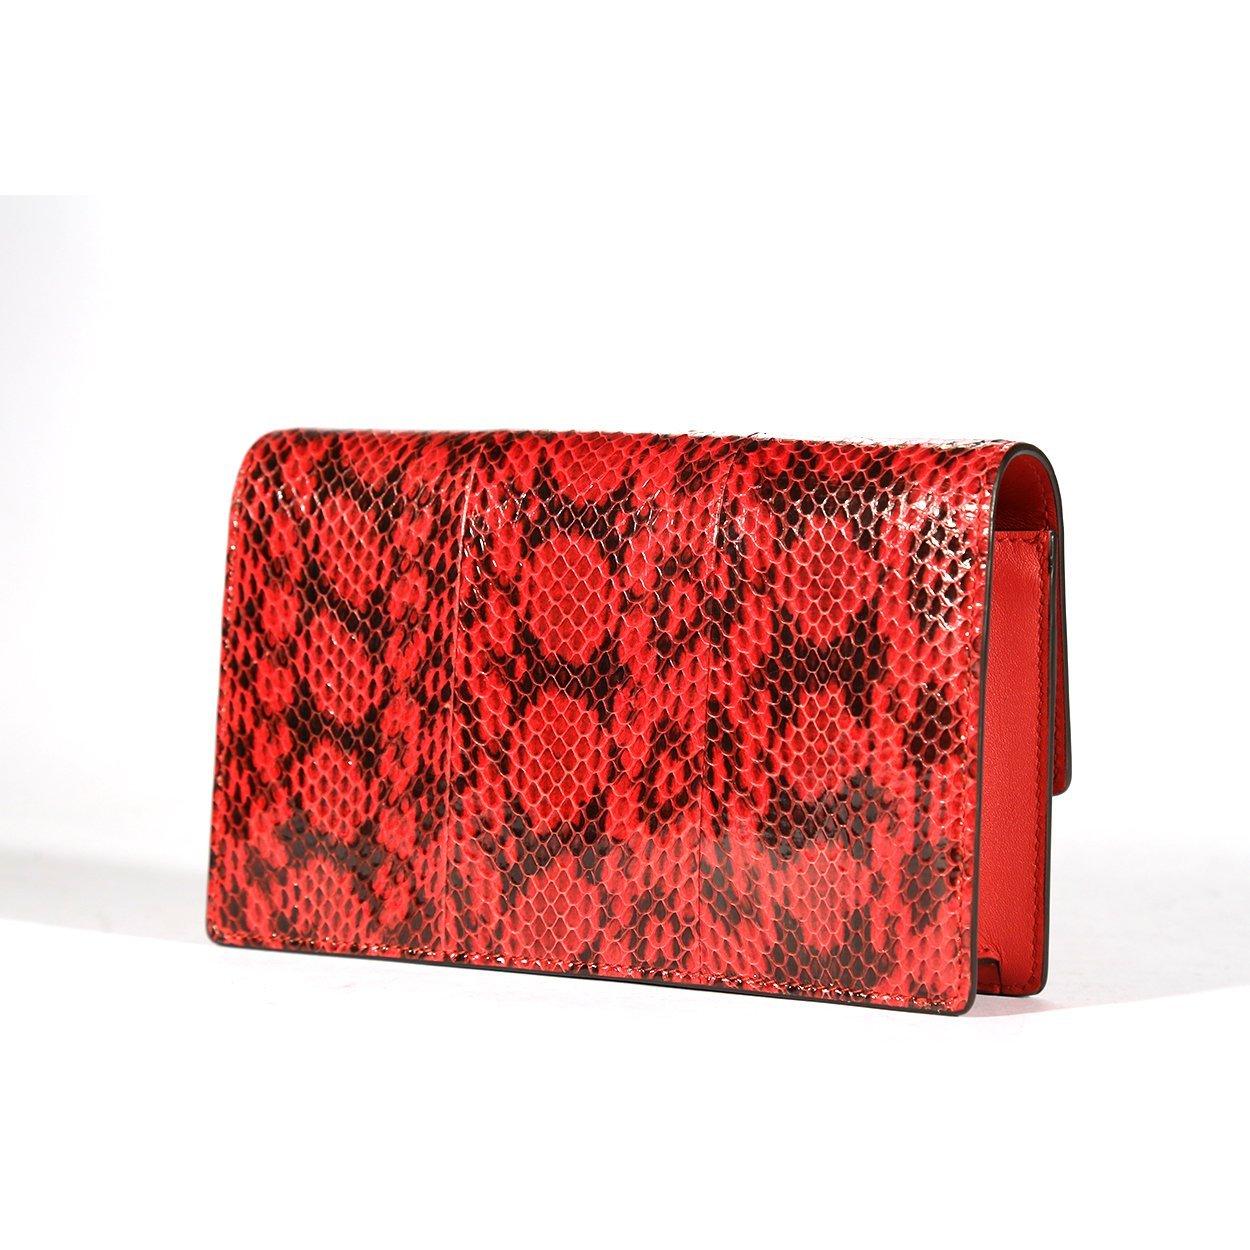 Vintage Michael Kors Red Leather Wallet. Matches Red Handbag/Shoulder Bag